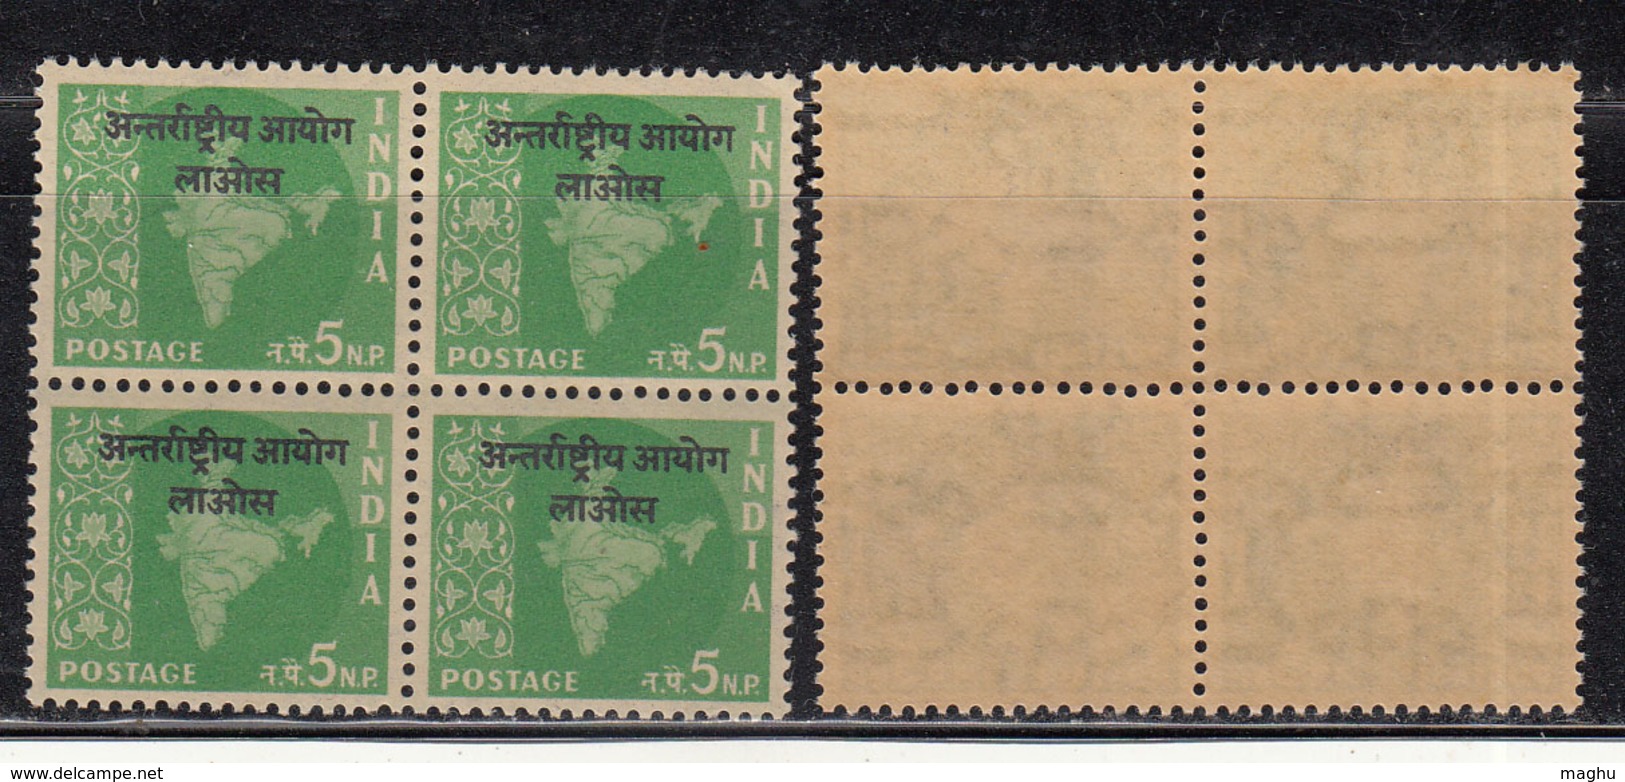 Block Of 4, 5np Ovpt Laos On Map Series,  India MNH 1962, Ashokan Watermark, - Militärpostmarken